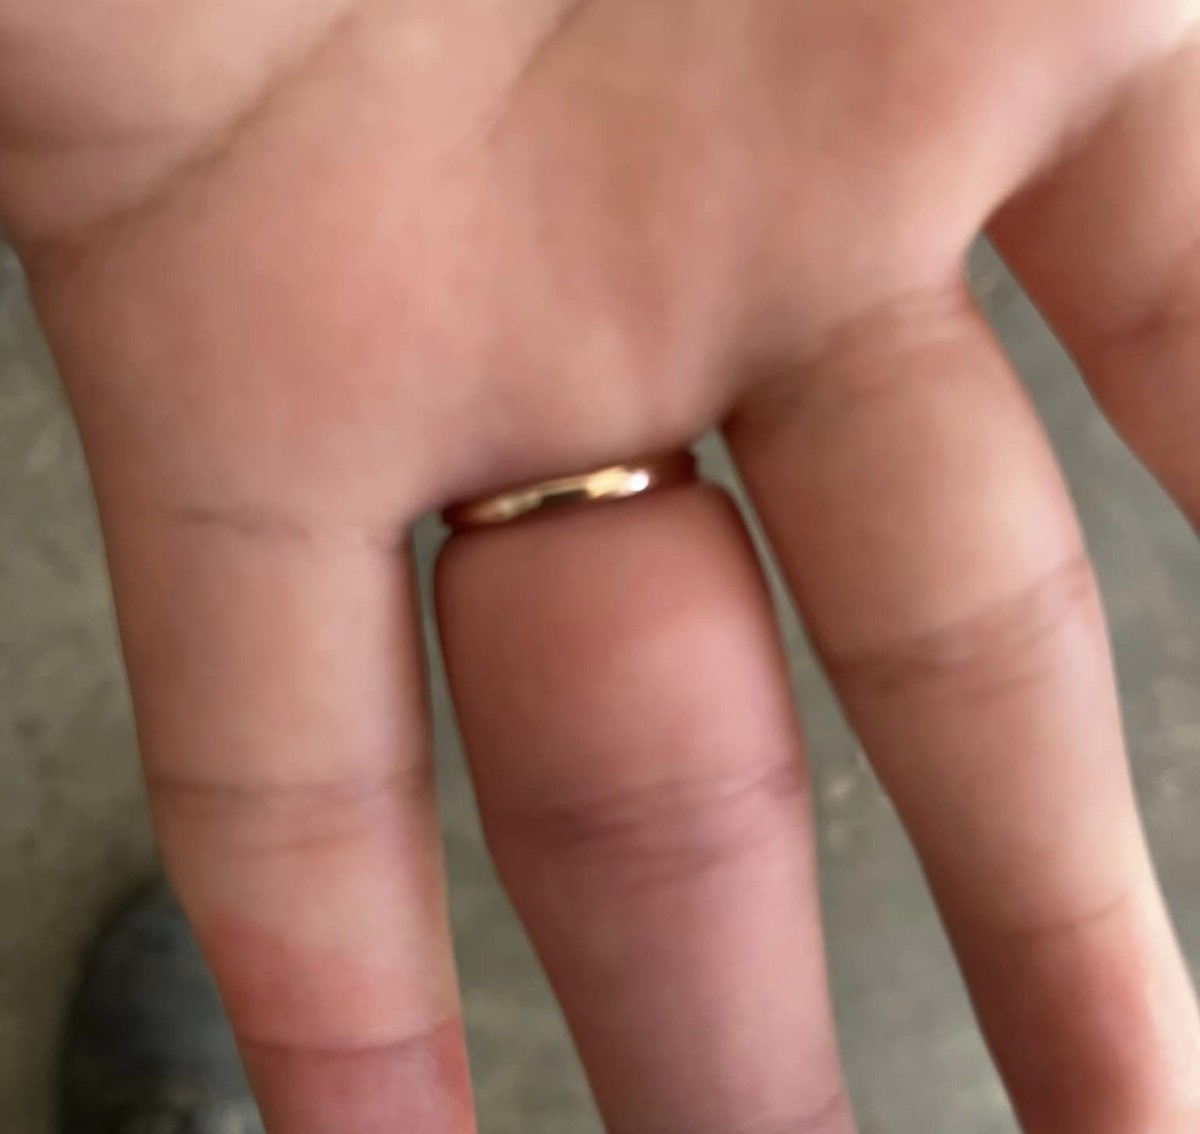 Se le atora anillo en el dedo de la mano a joven y pide ayuda a los Bomberos